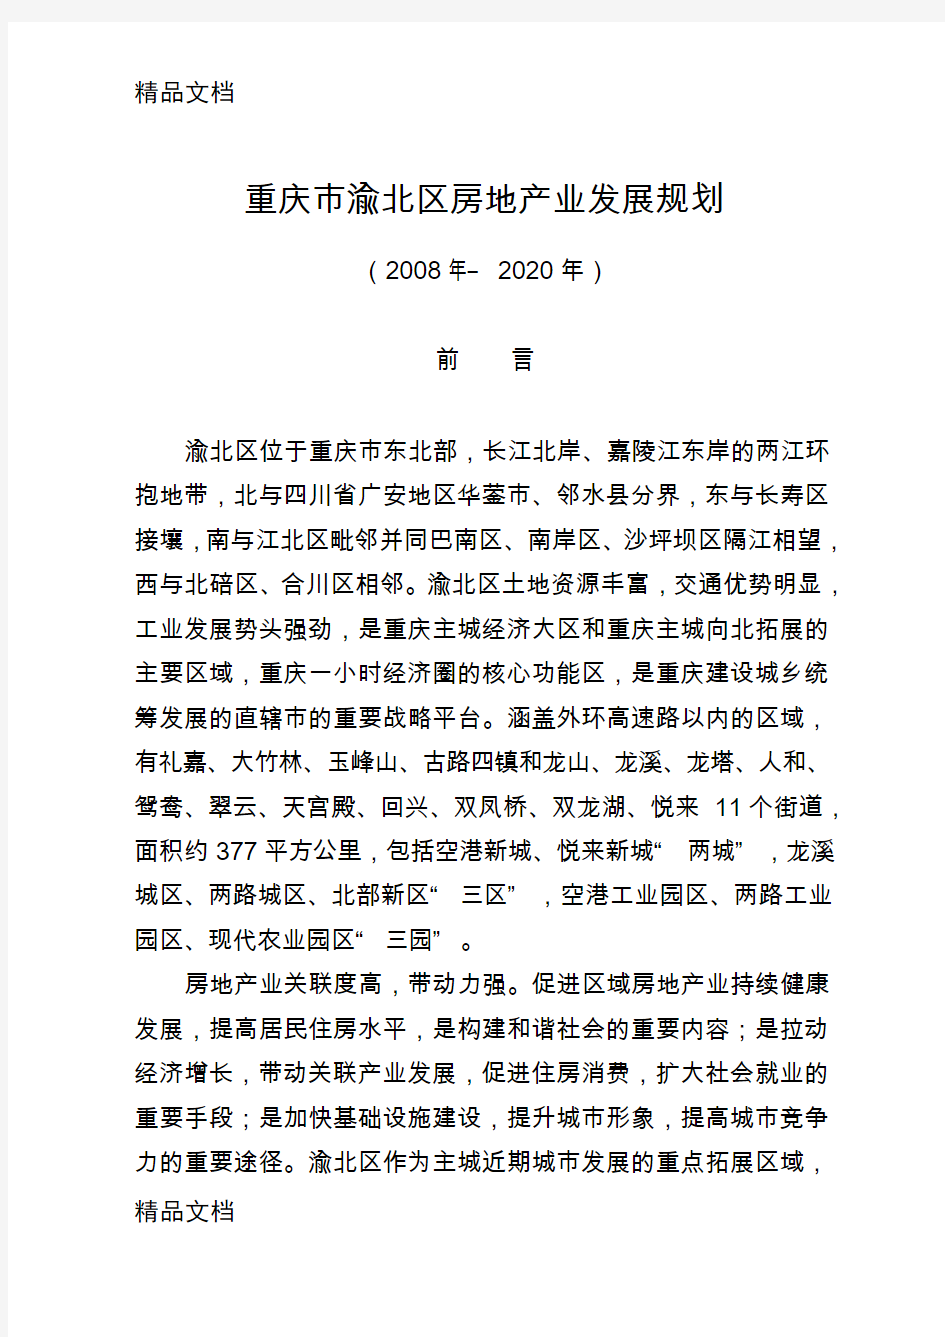 《重庆市渝北区房地产业发展规划》(—2020年)复习课程